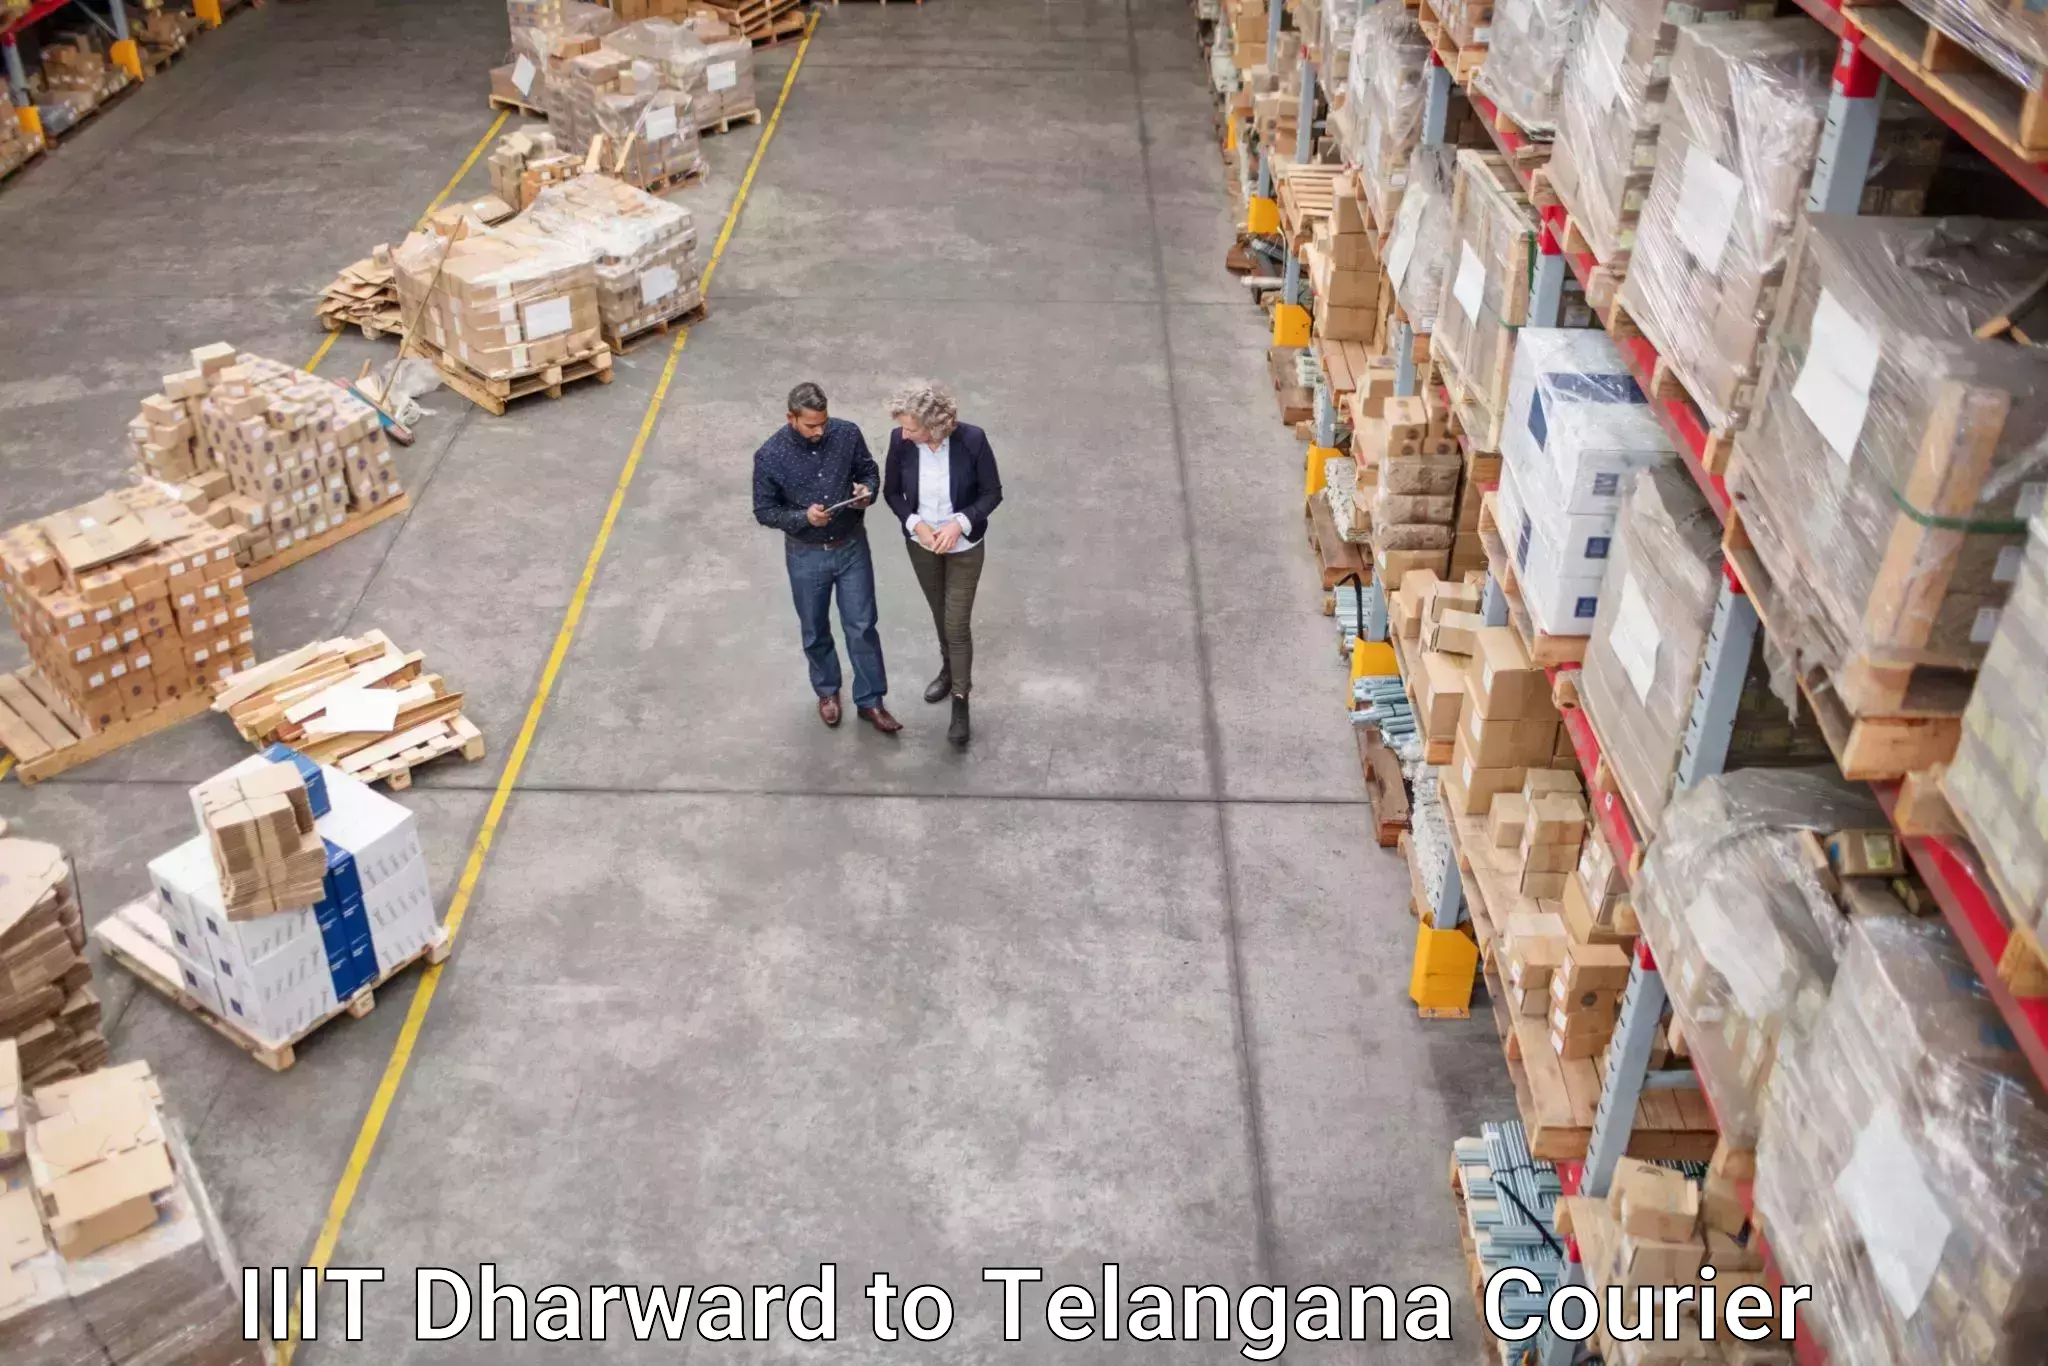 Professional courier handling IIIT Dharward to Haliya